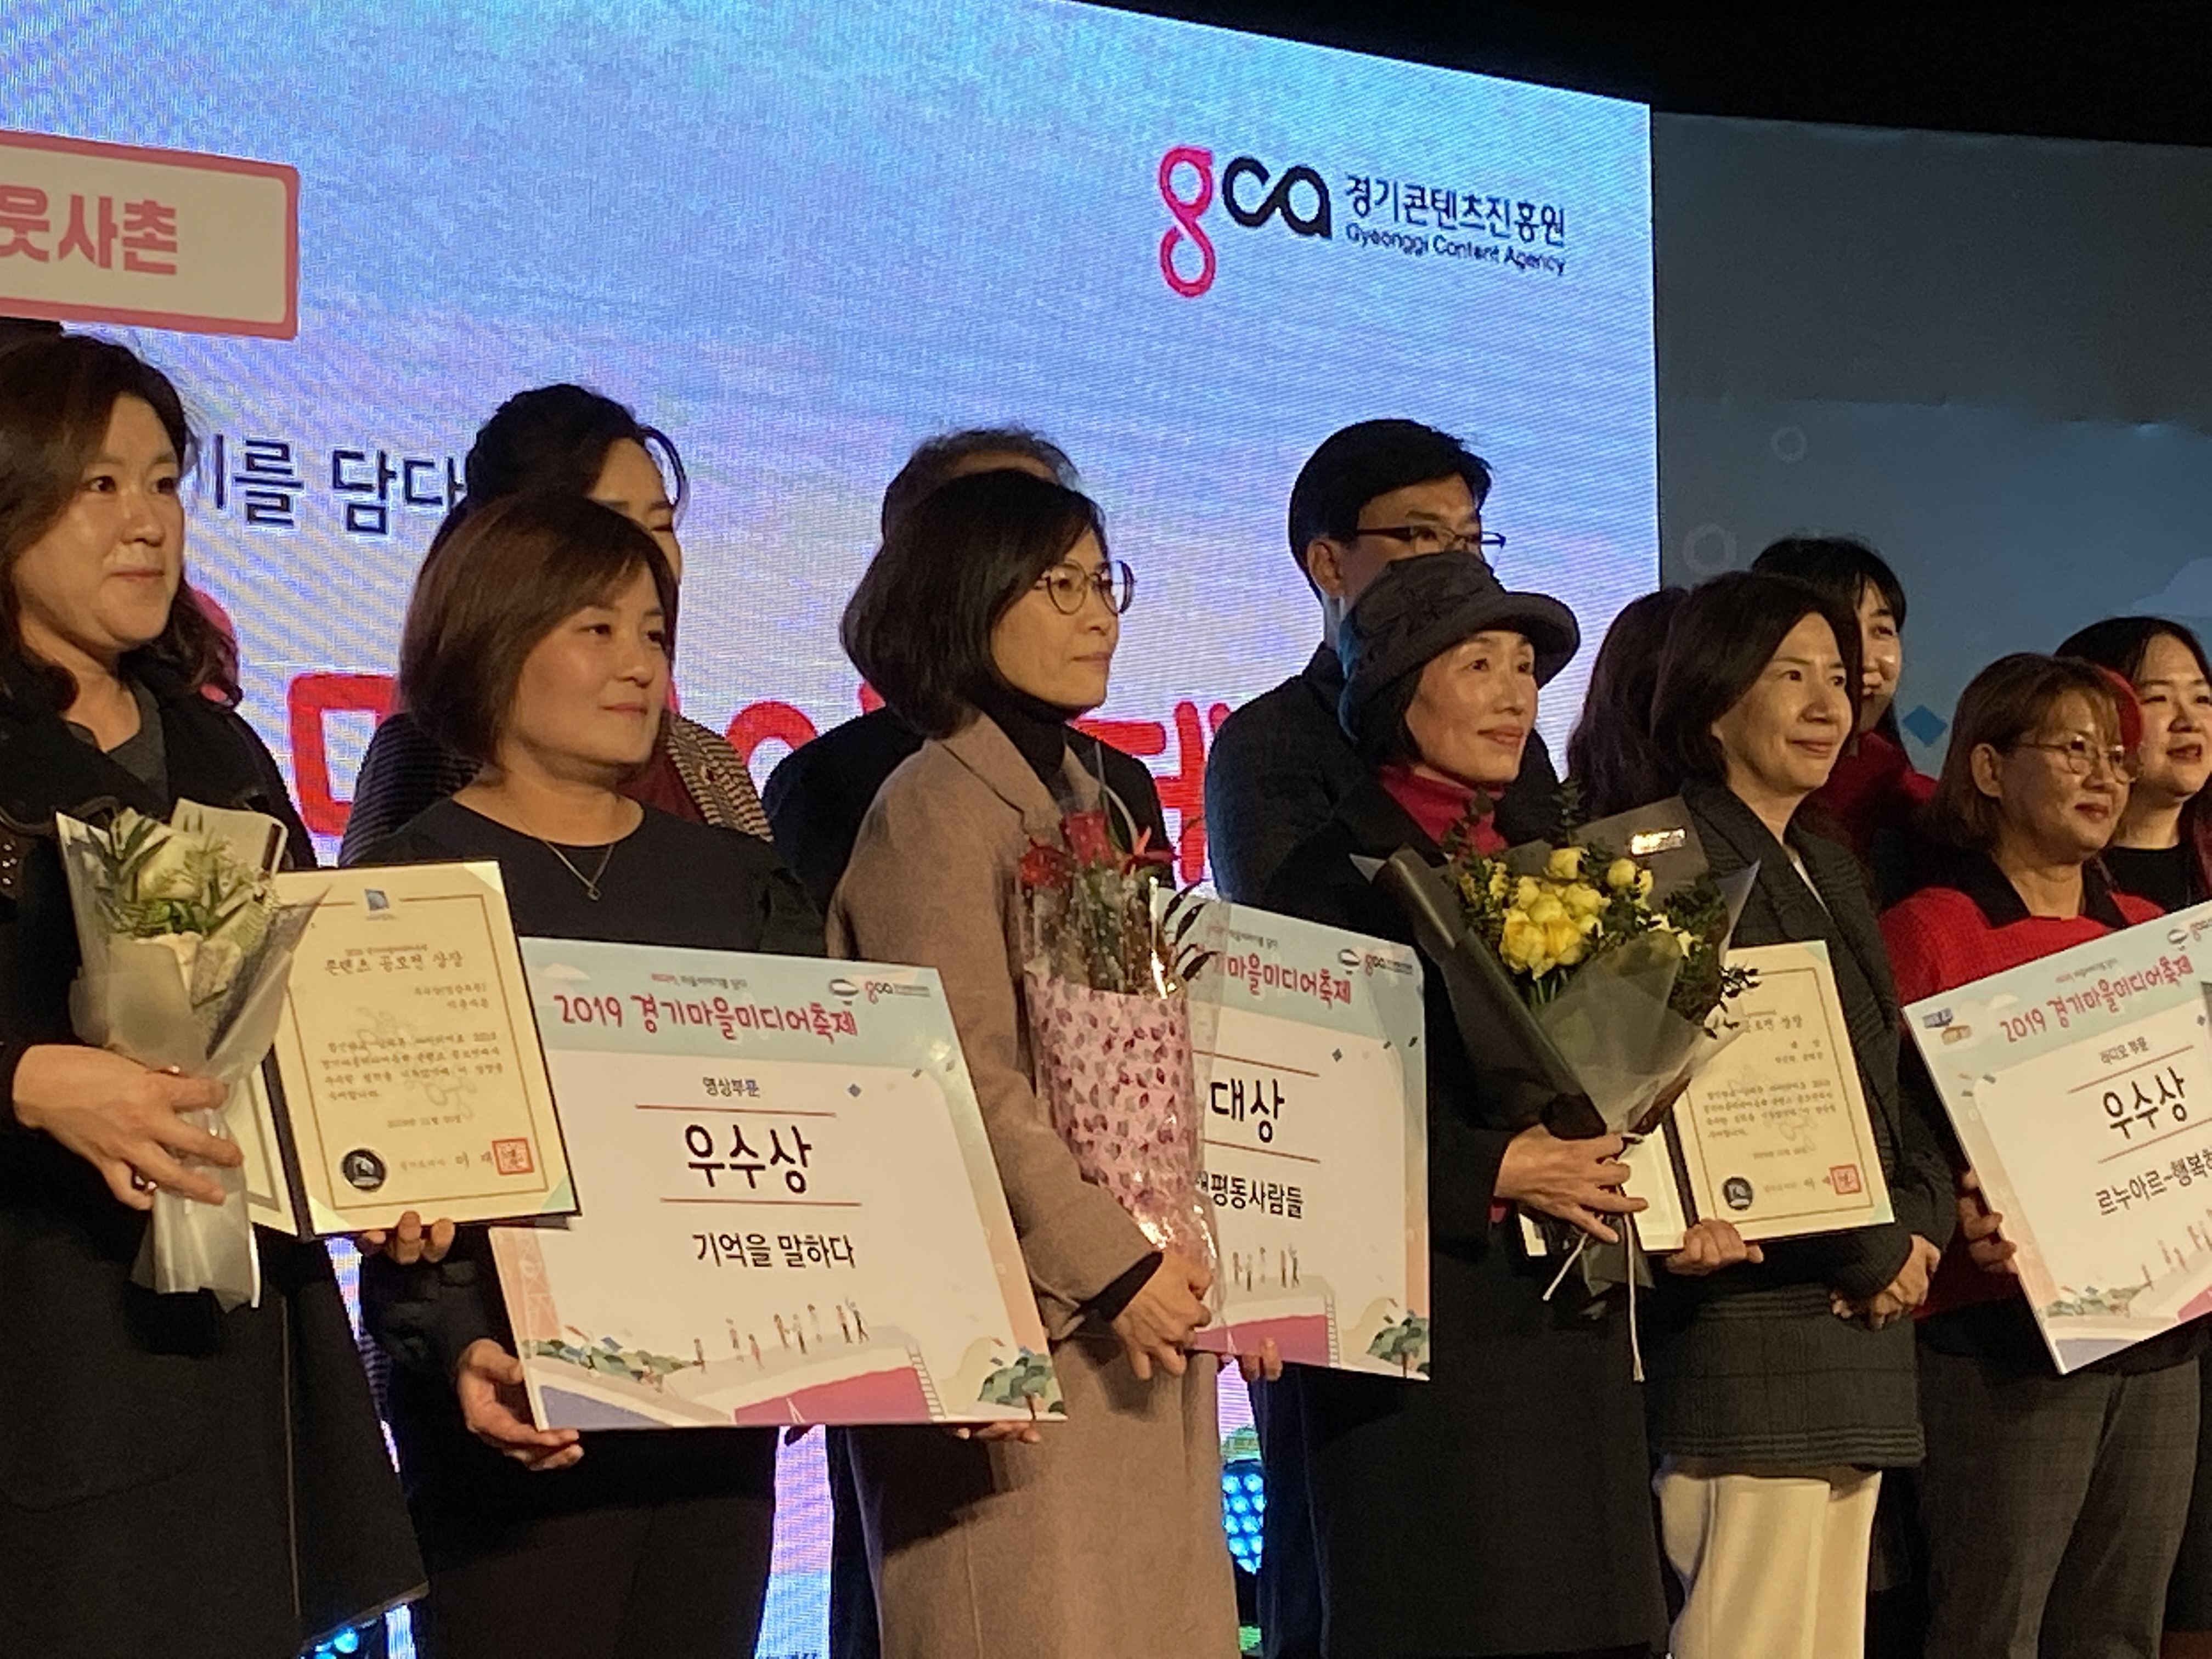 2019경기마을미디어축제 대상/우수상 수상을 축하하며!